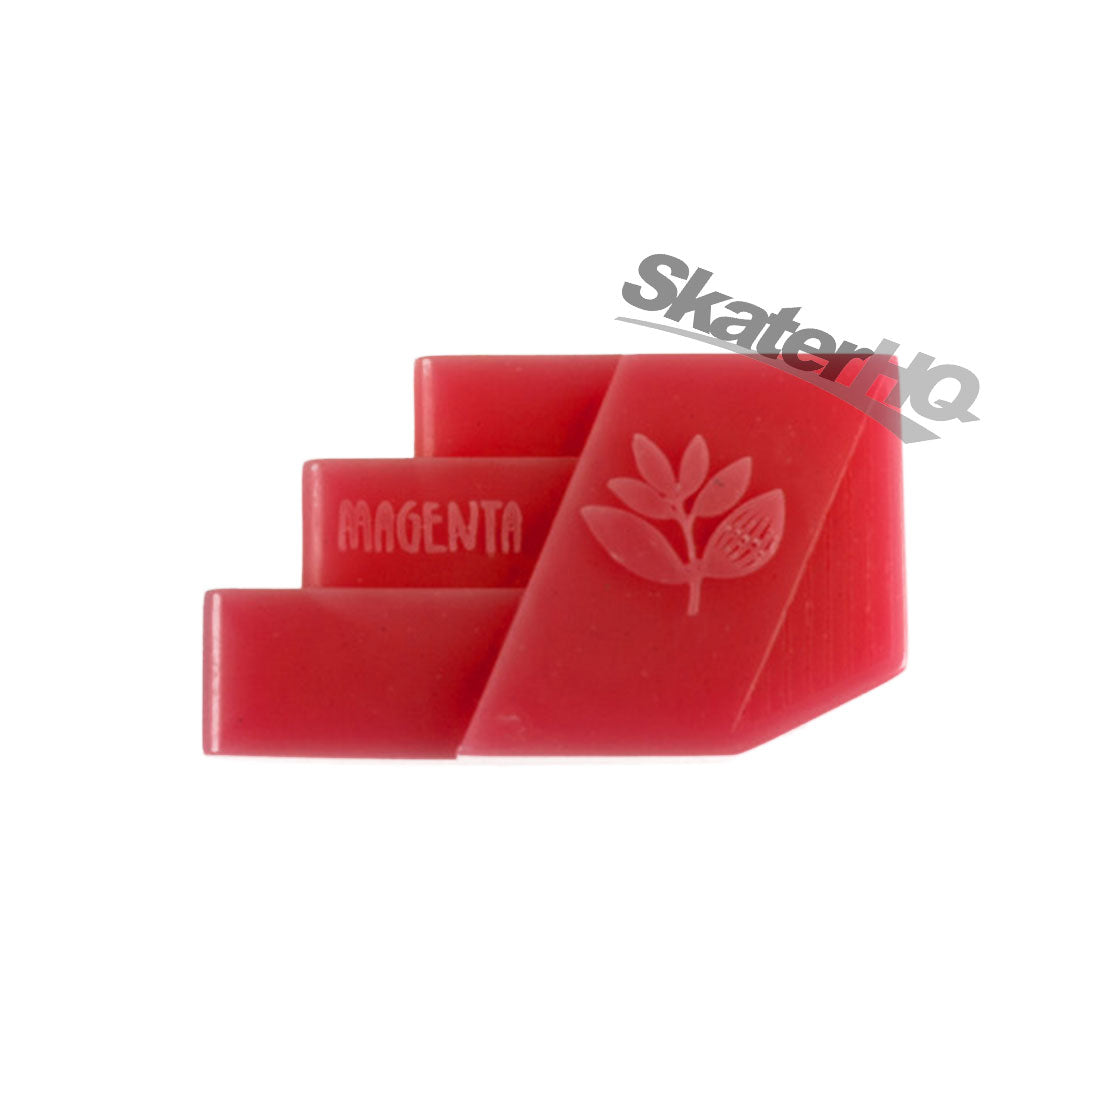 Magenta Stair Grinder Wax - Red Skateboard Accessories